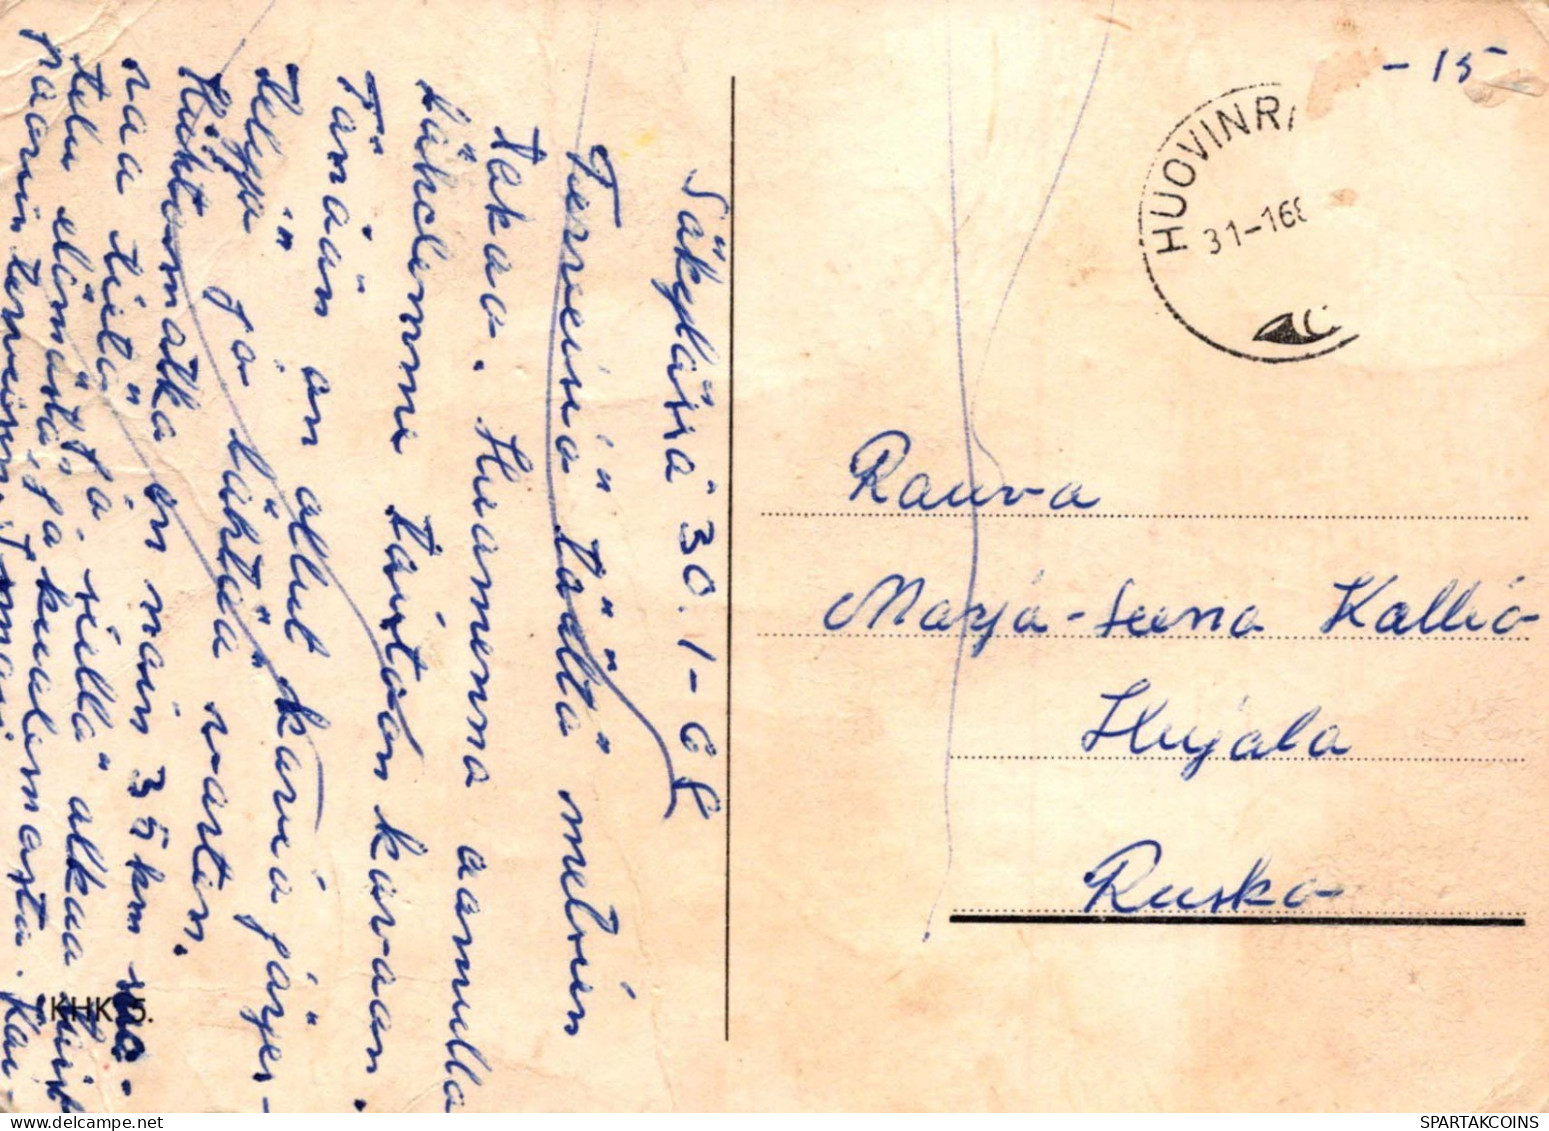 SOLDATI UMORISMO Militaria Vintage Cartolina CPSM #PBV952.IT - Umoristiche